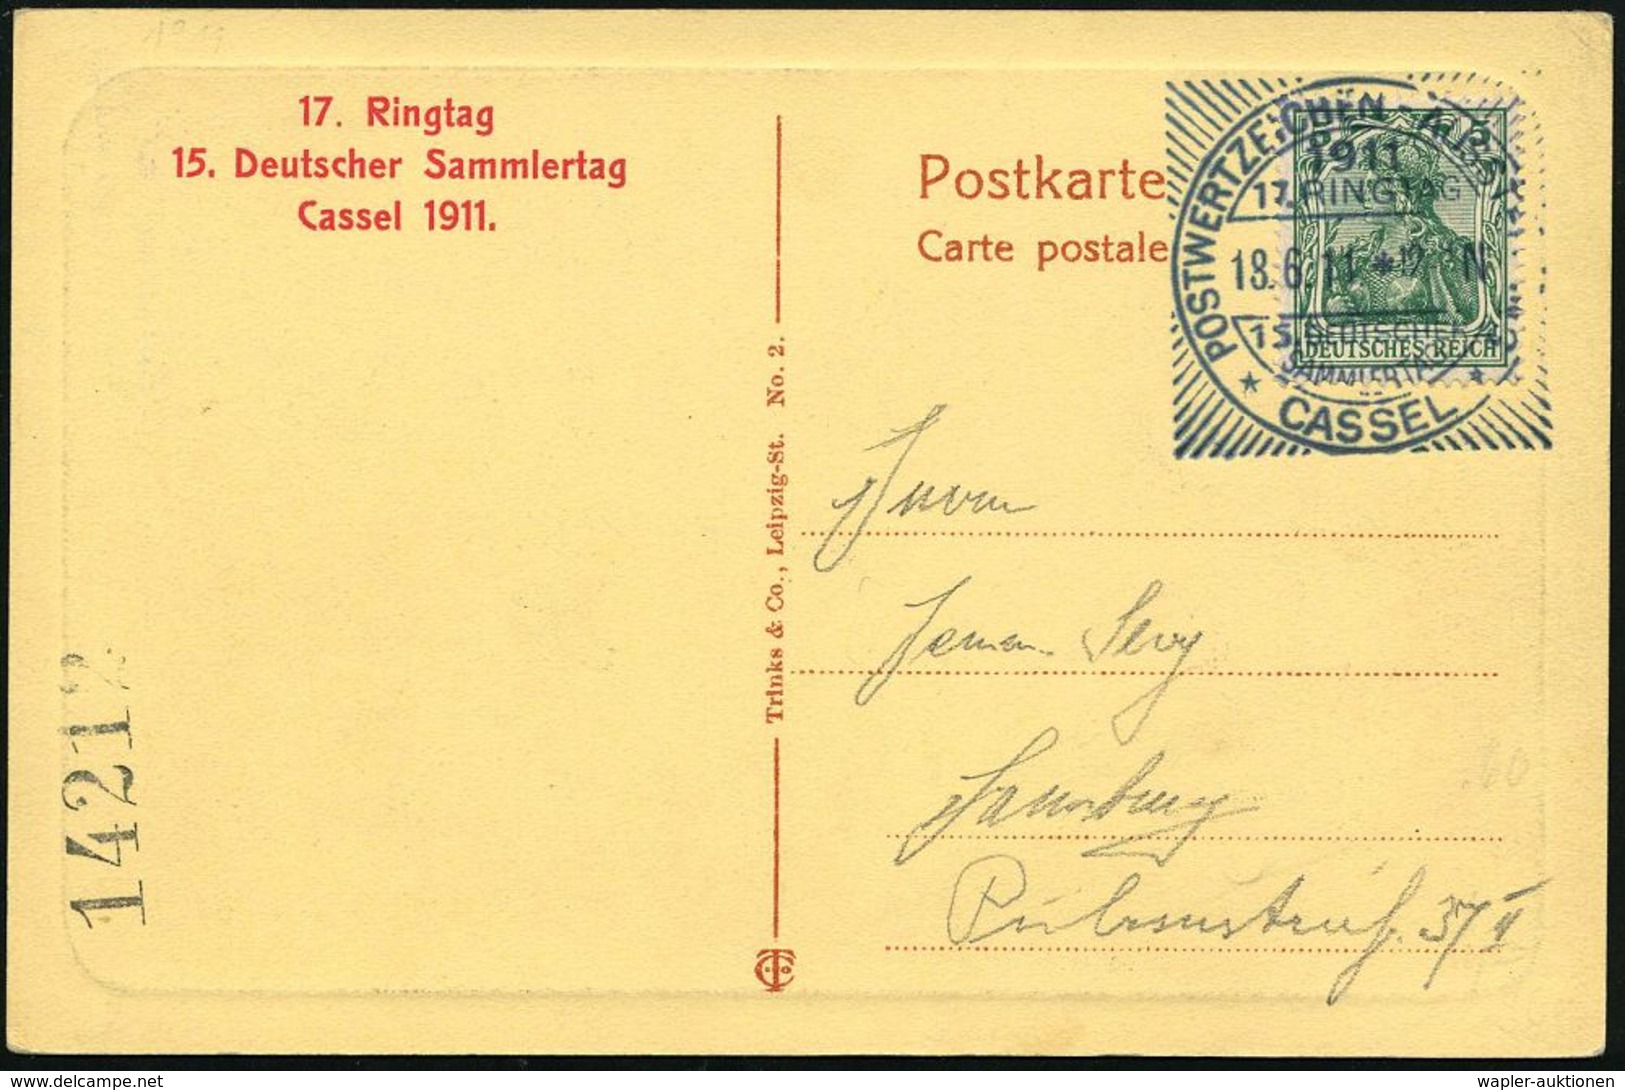 Kassel 1911 (18.6.) SSt: CASSEL/POSTWERTZEICHEN-AUSSTELLUNG/17.RINGTAG/15.DEUTSCHER/SAMMLERTAG (Sonderform Mit Strahlenk - Esposizioni Filateliche